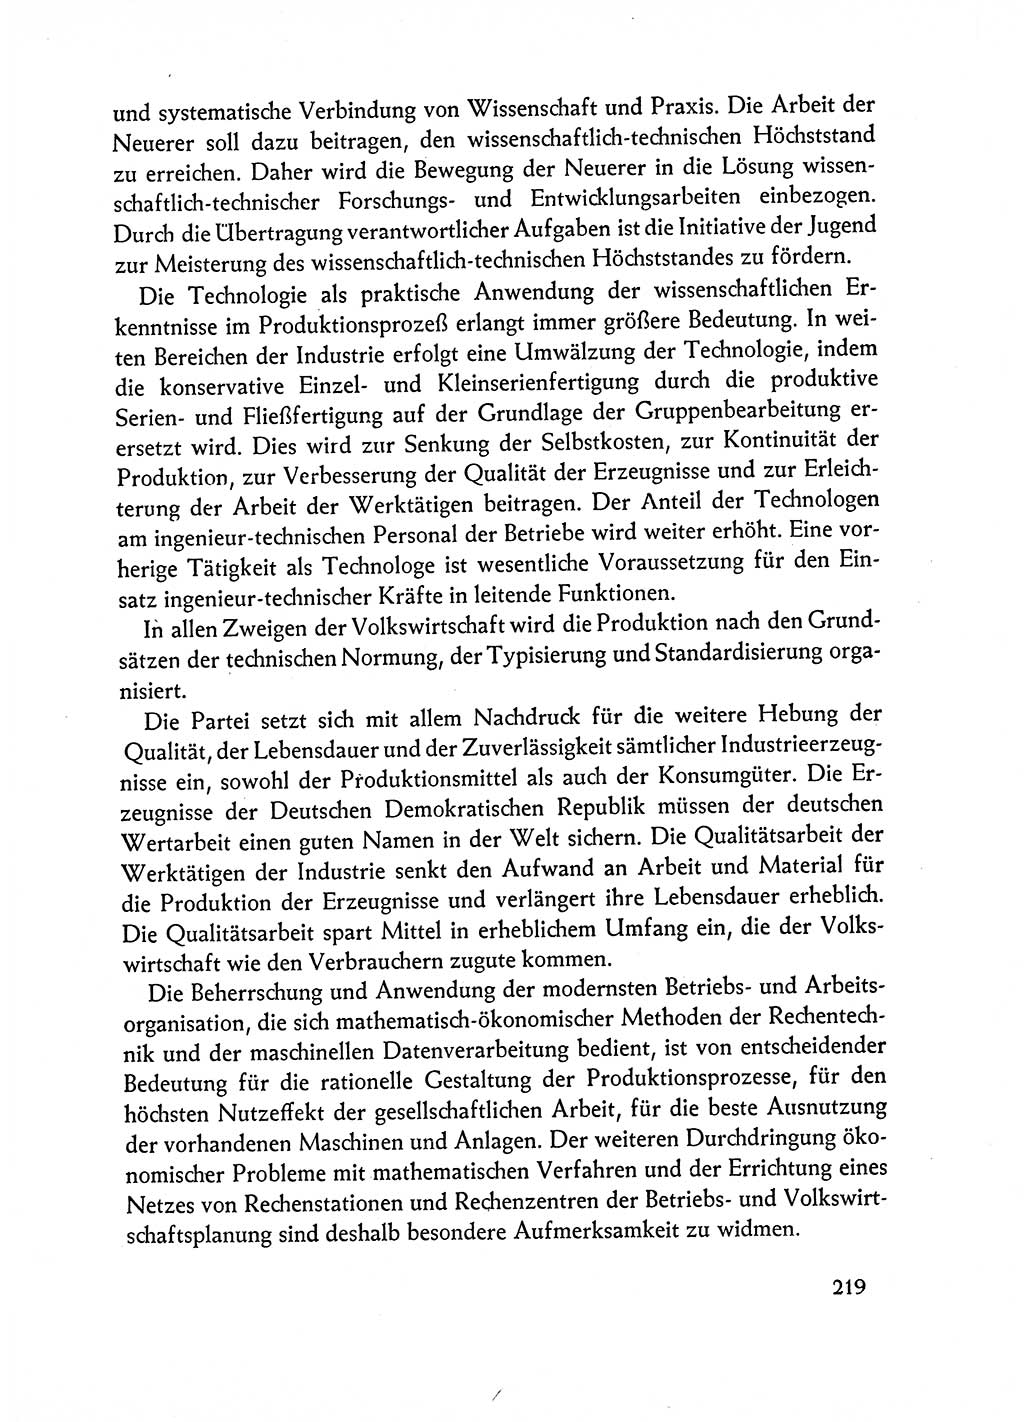 Dokumente der Sozialistischen Einheitspartei Deutschlands (SED) [Deutsche Demokratische Republik (DDR)] 1962-1963, Seite 219 (Dok. SED DDR 1962-1963, S. 219)